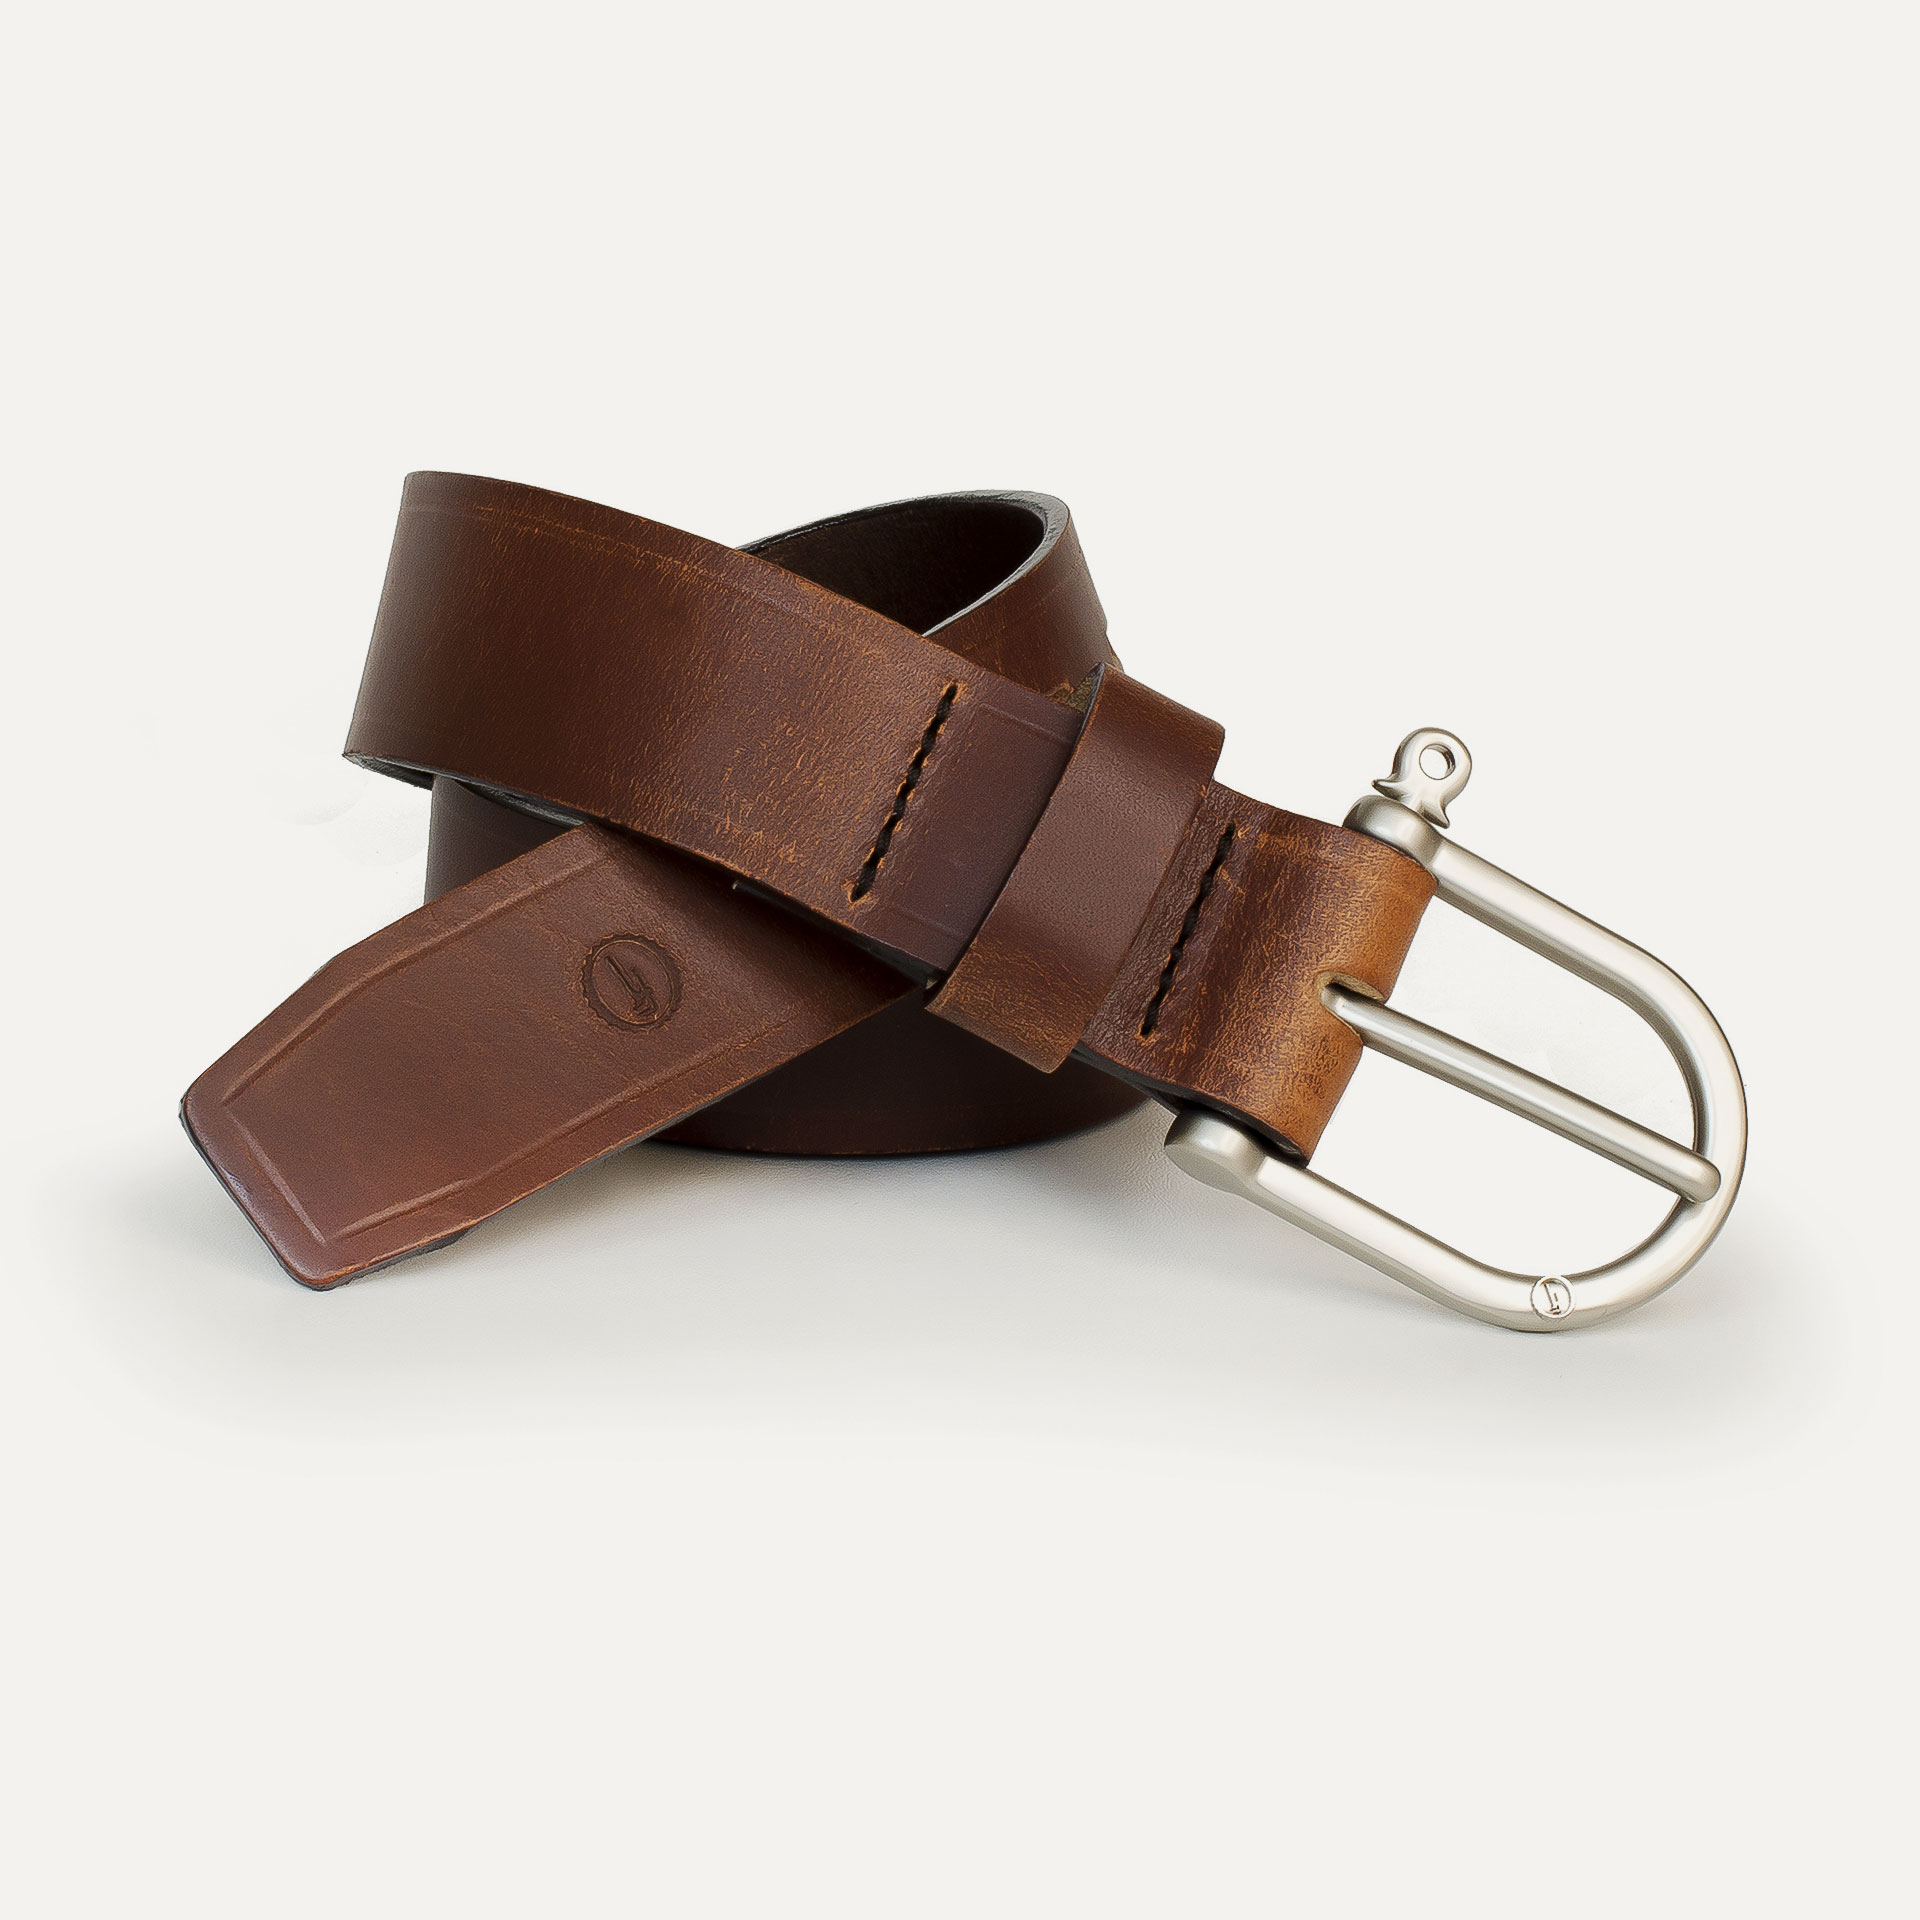 Men's brown leather belt